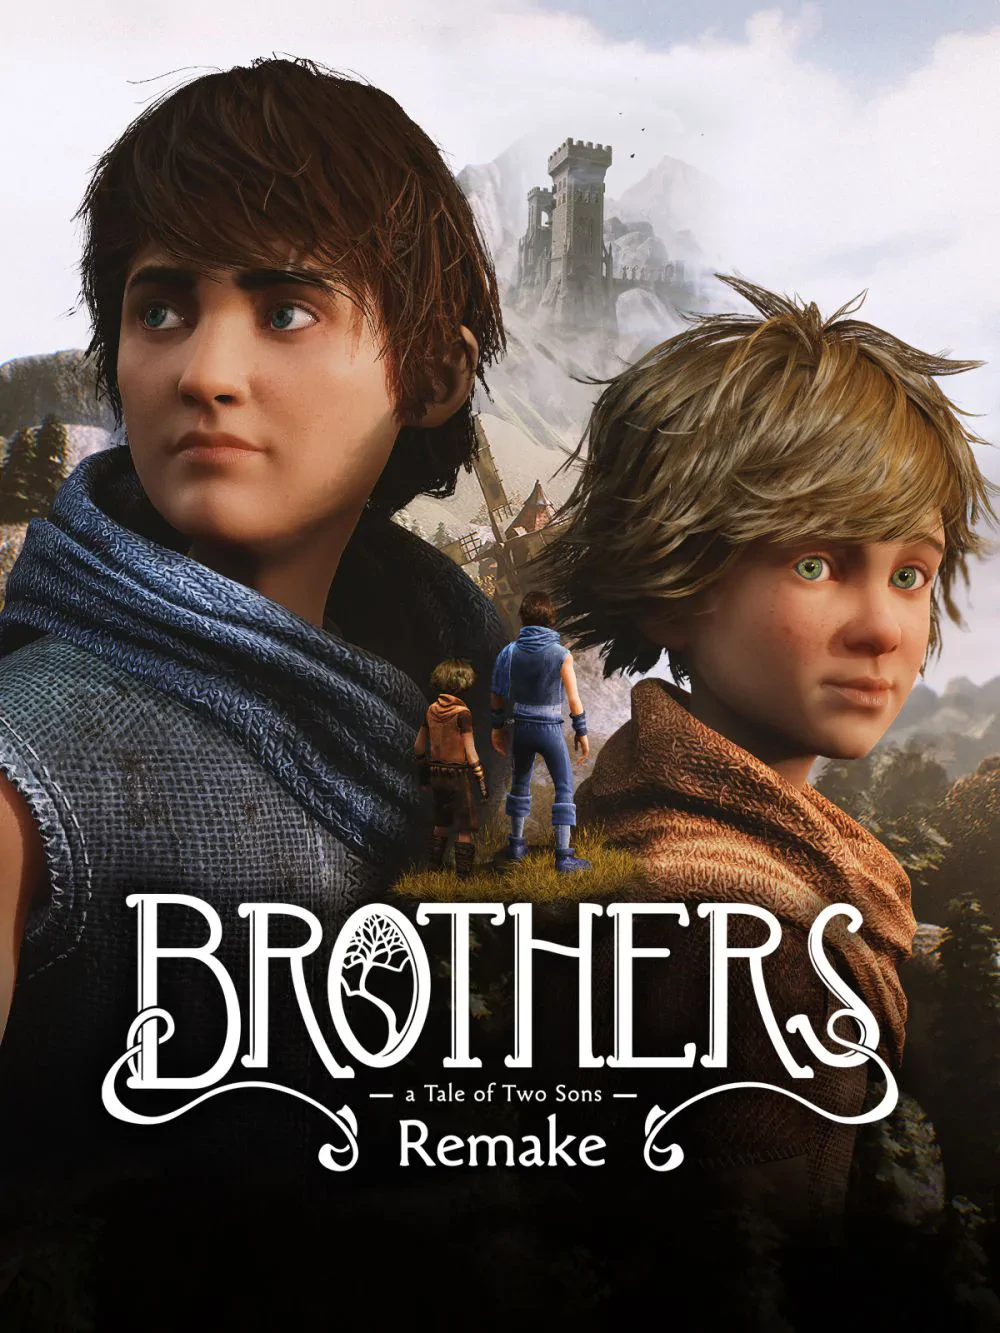 Brothers: A Tale of Two Sons Remake - recenzja gry. Znana i doceniona historia z nowym spojrzeniem